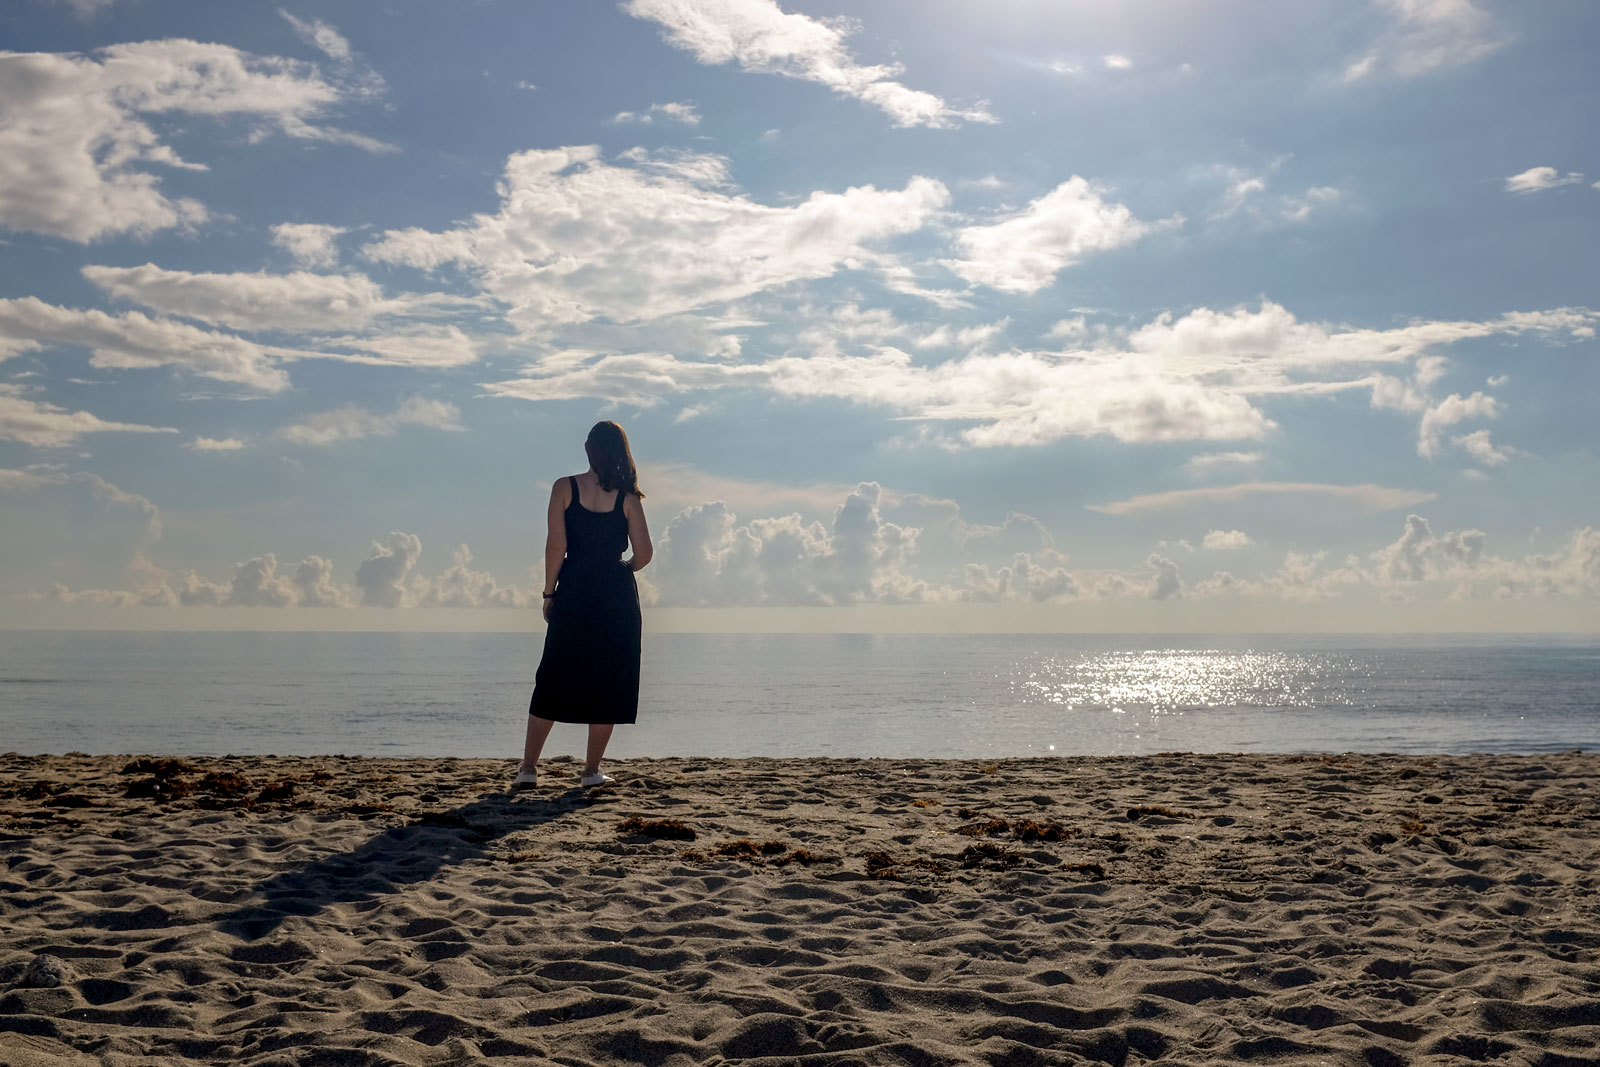 Alyssa stands in silhouette on Miami Beach